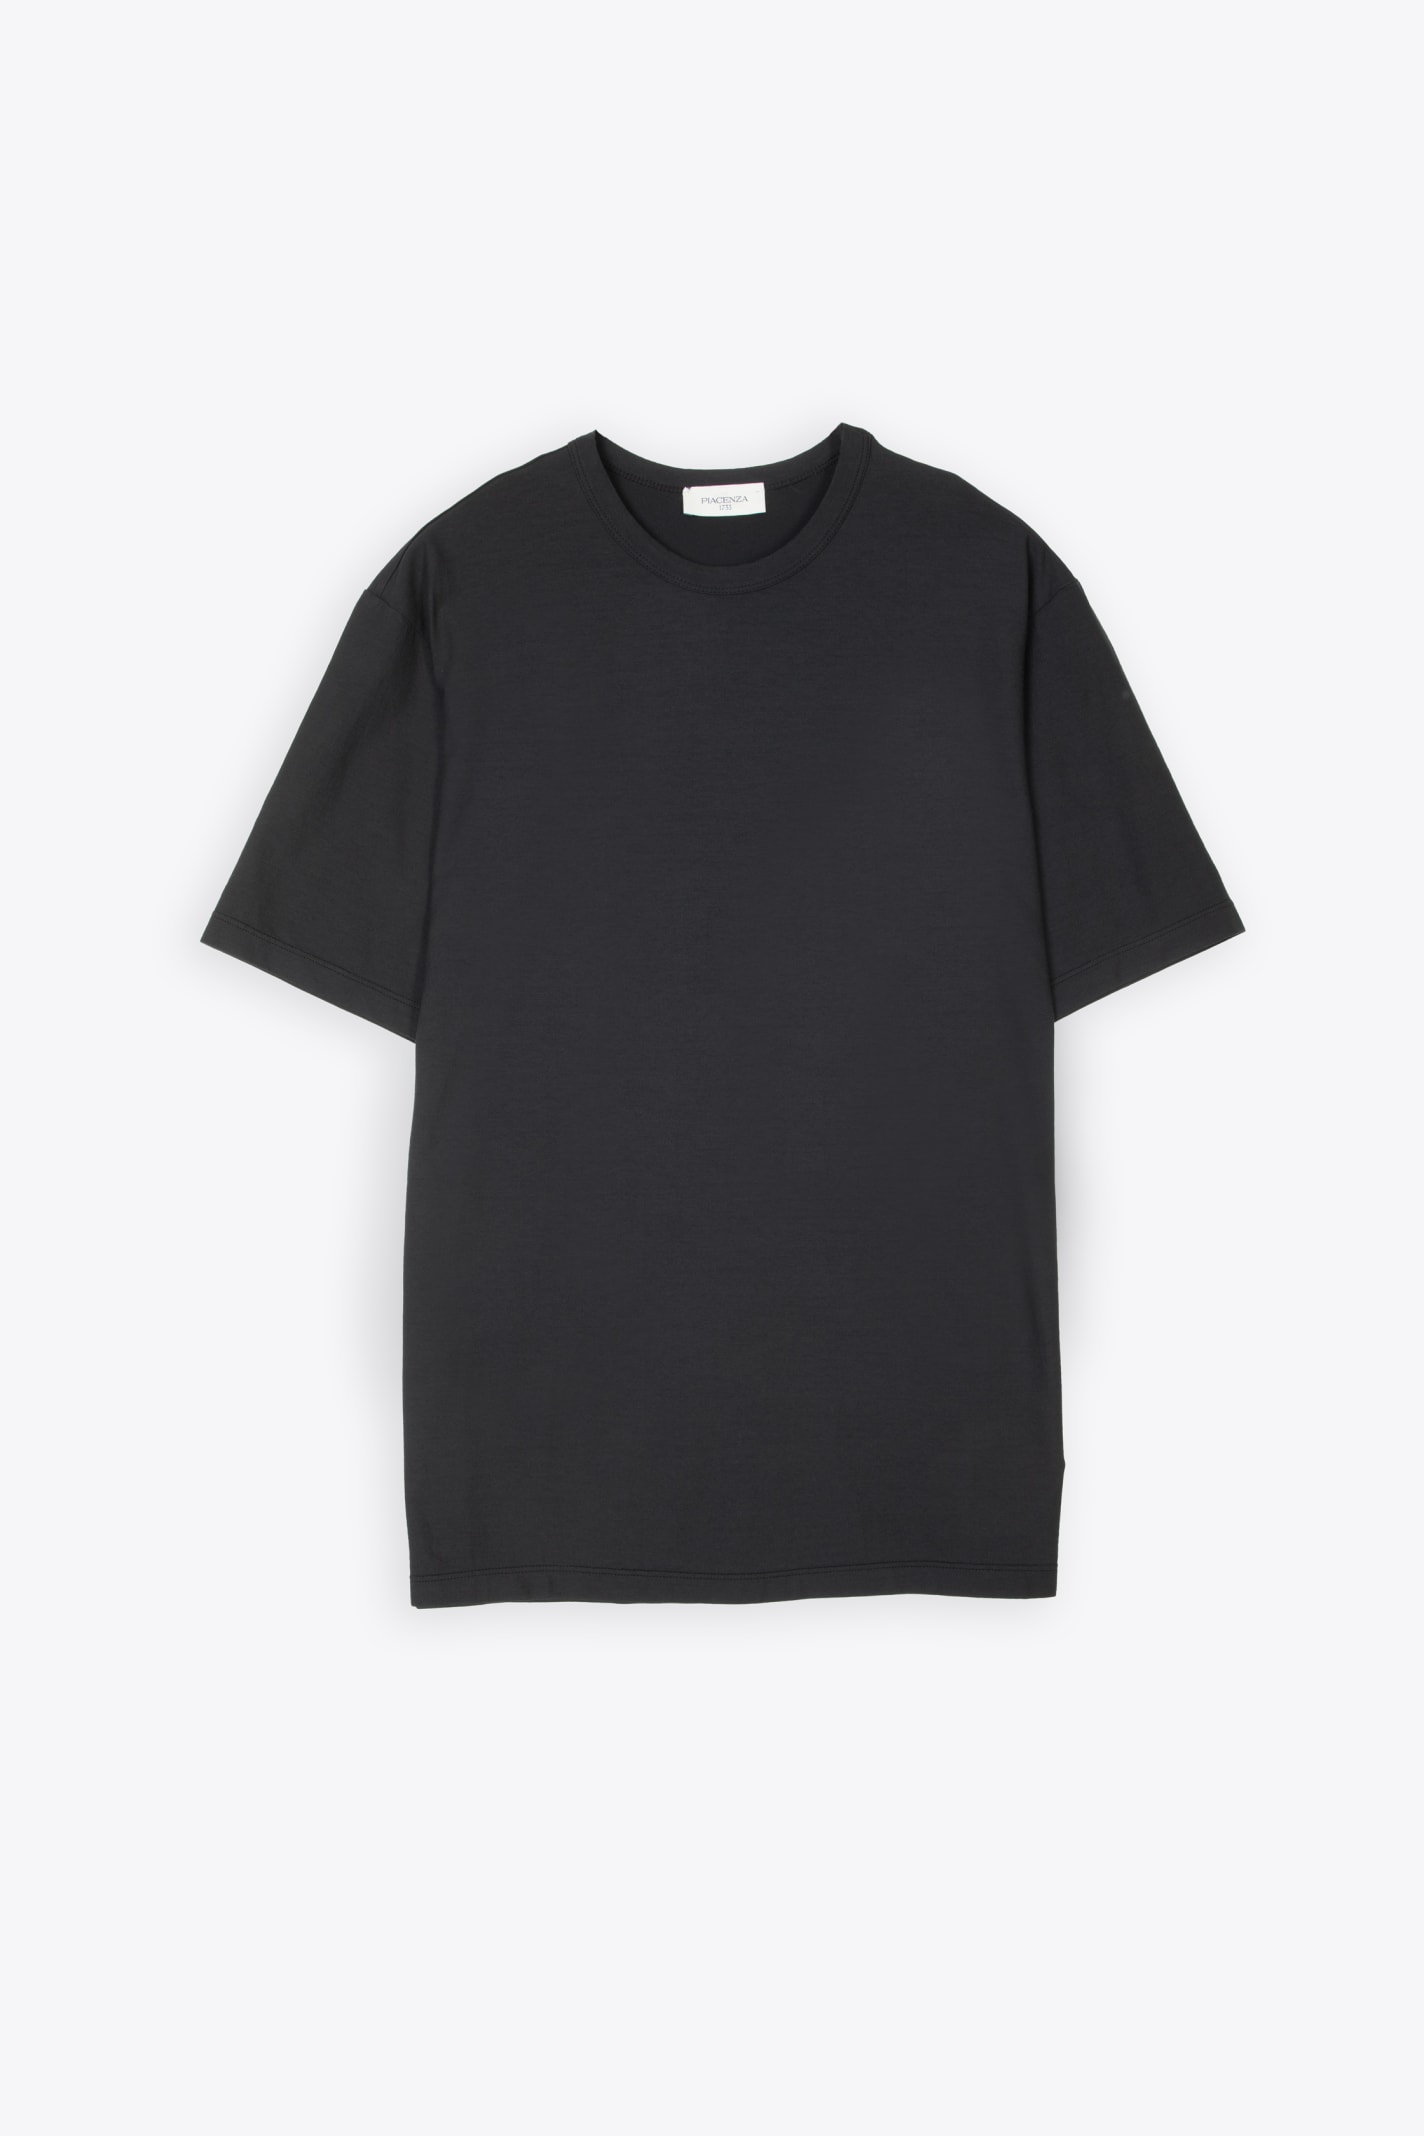 T-shirt Black lightweight cotton t-shirt